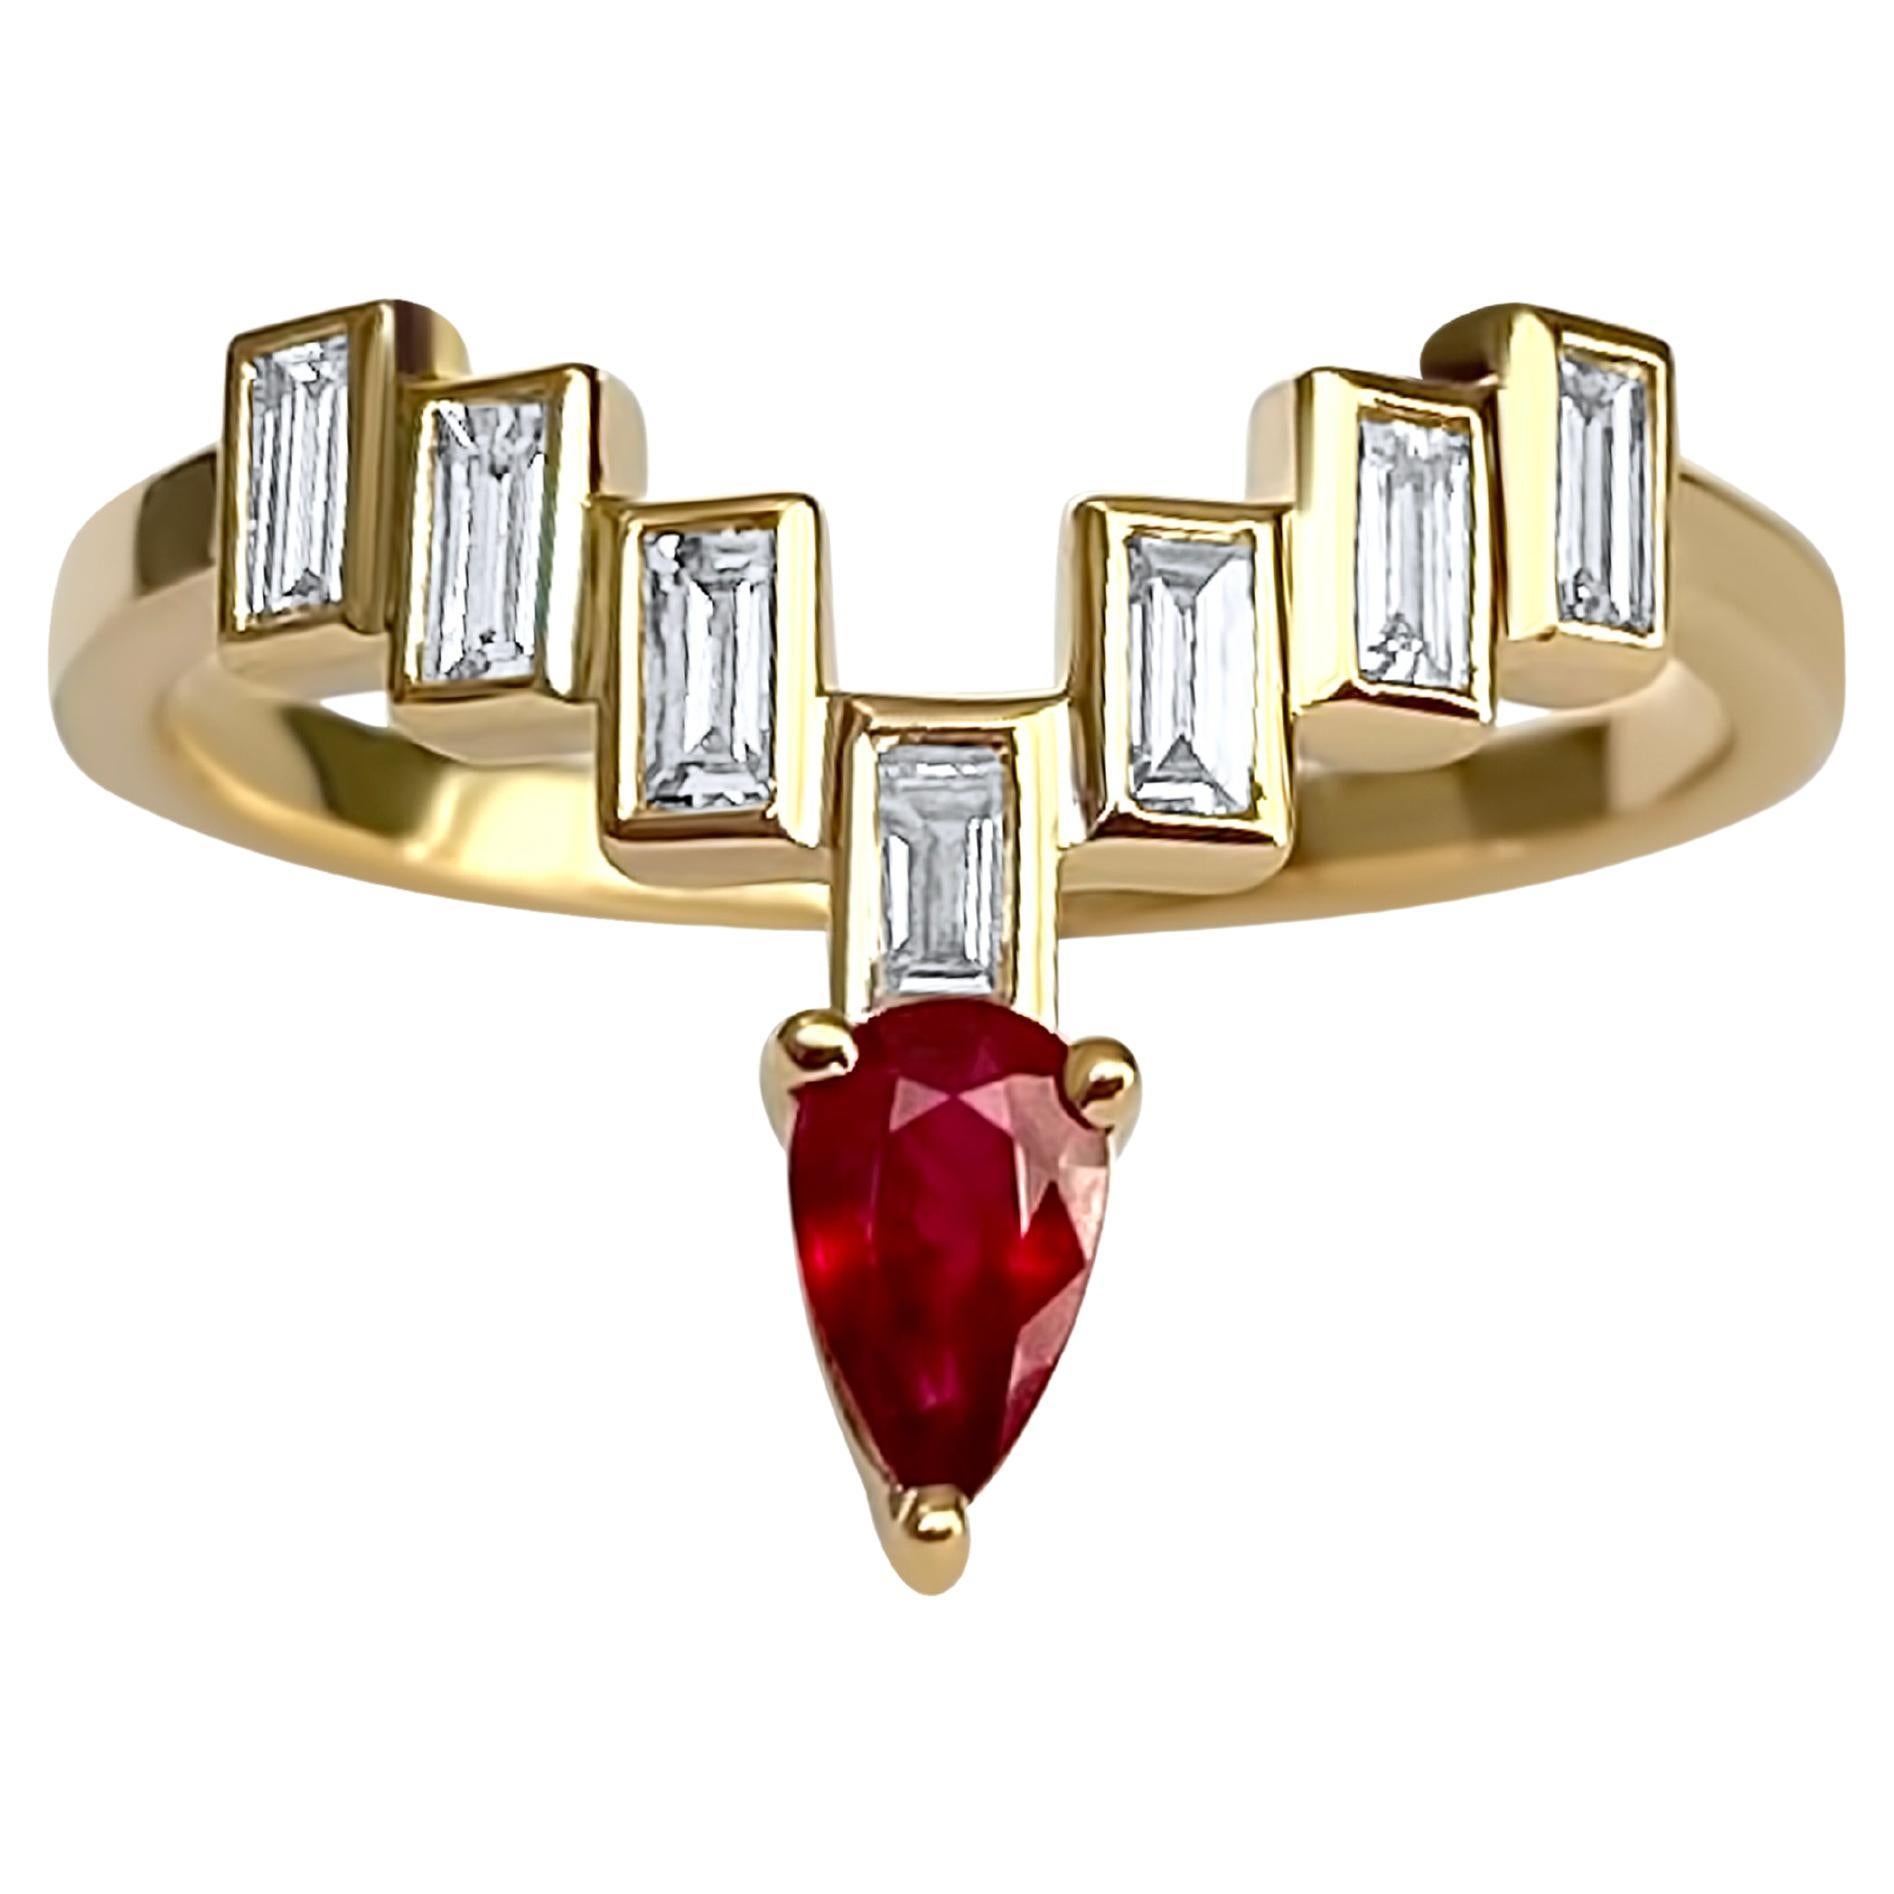 Bague « Enlightenment Celestial Crown Tiara » avec diamants, baguettes et rubis